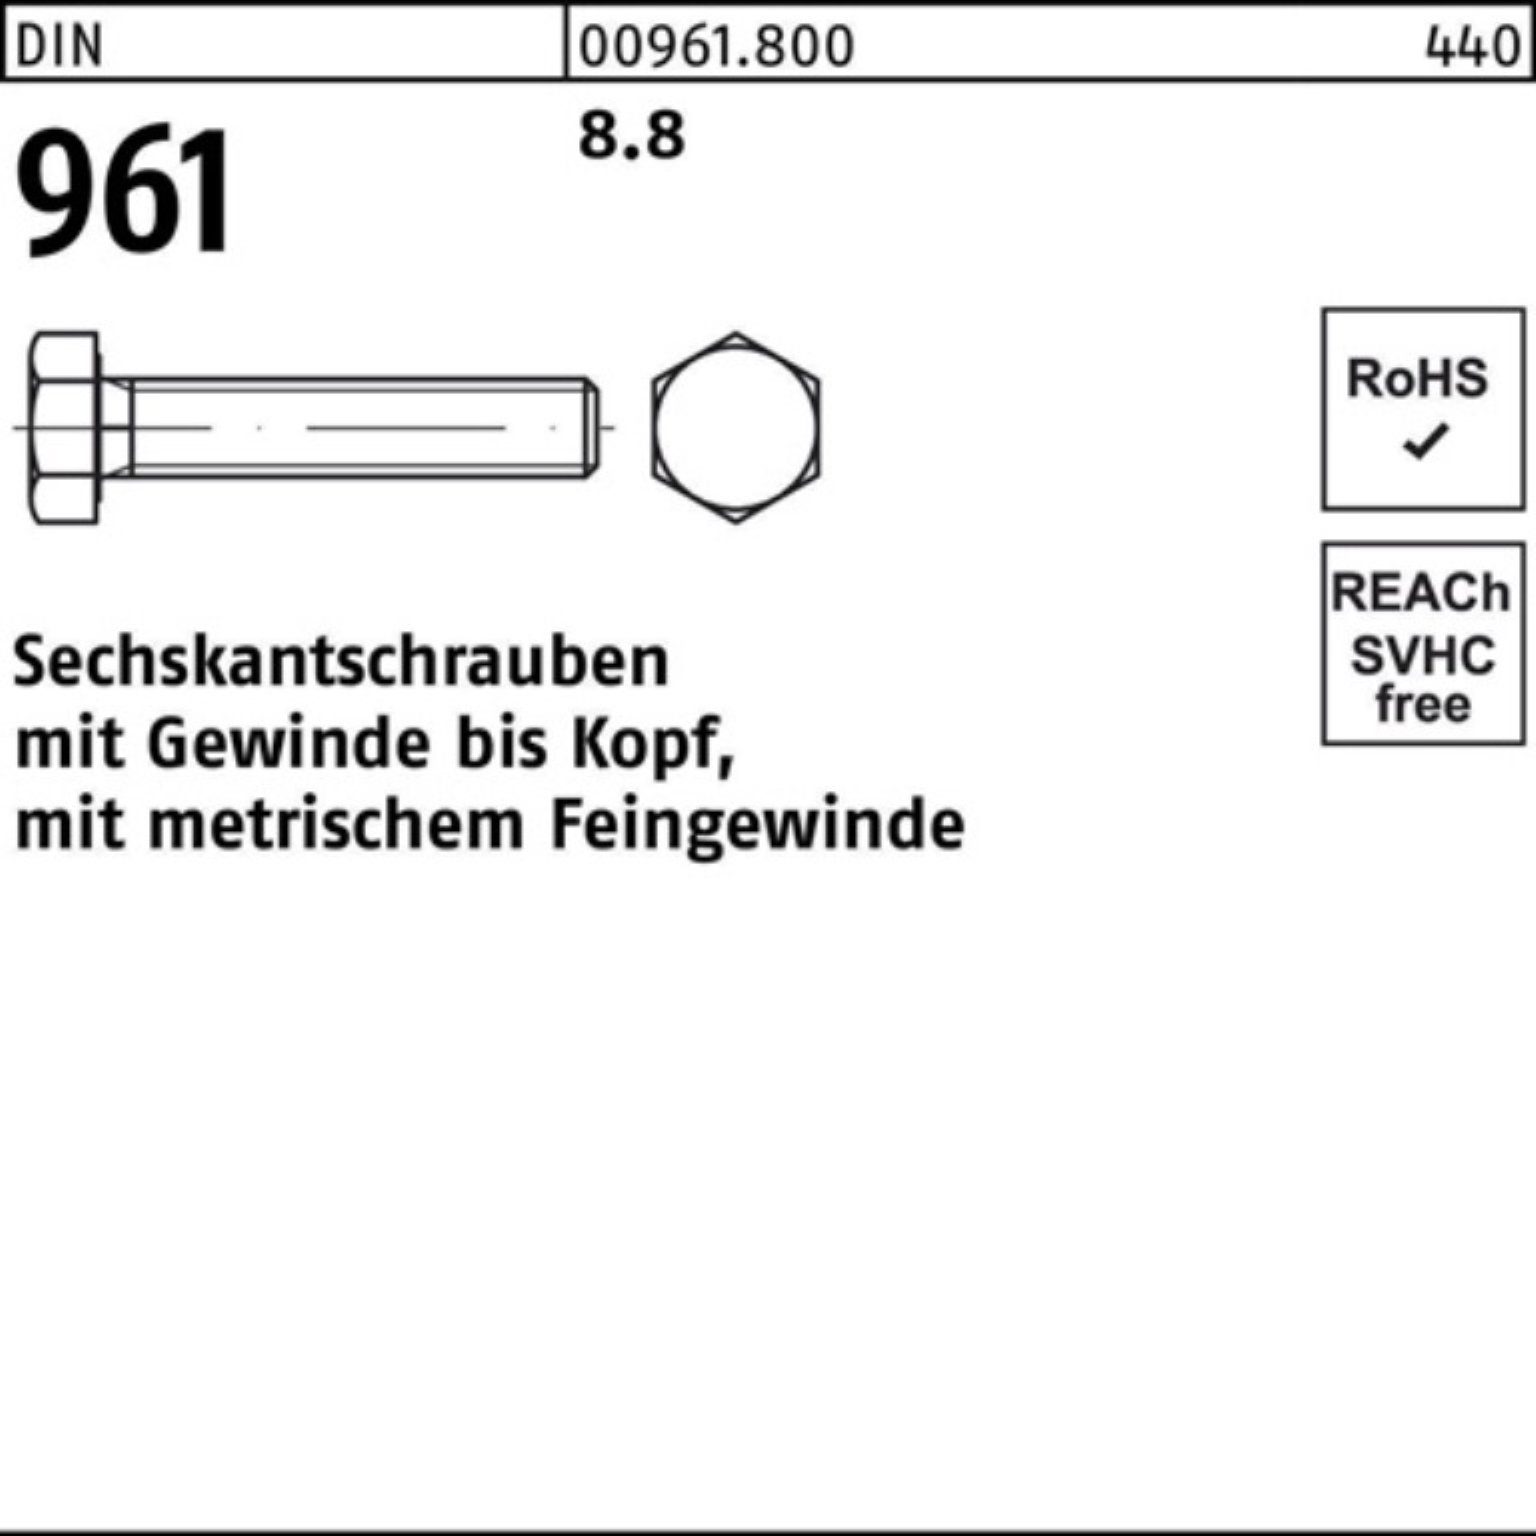 50 Stück 100er DIN DIN VG M14x1,5x 90 8.8 Sechskantschraube Reyher Pack Sechskantschraube 961